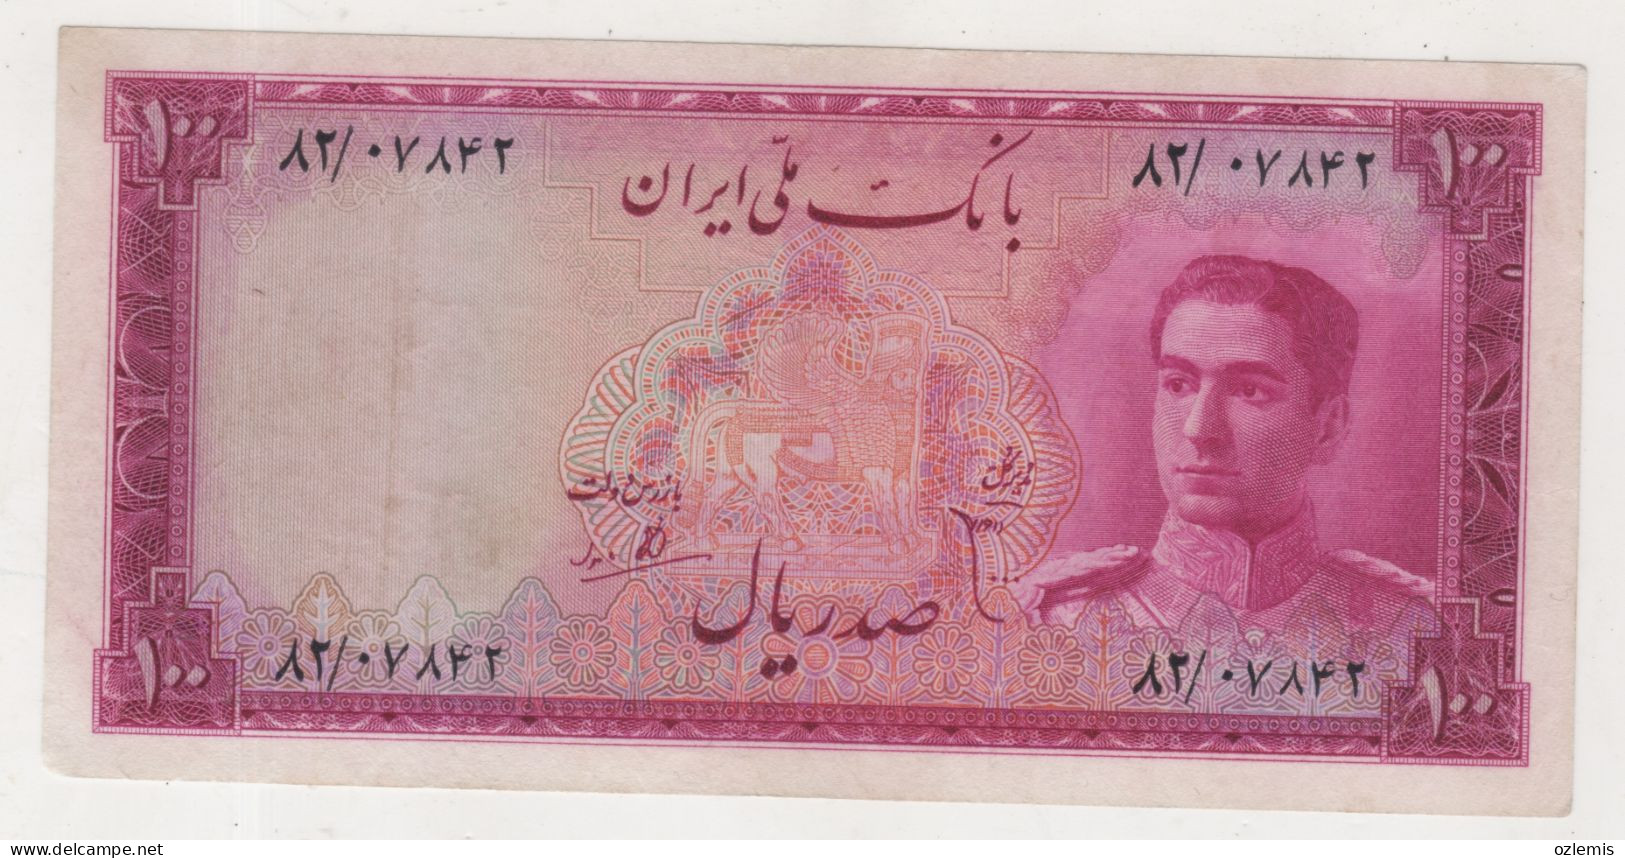 IRAN: 1951 ,100 RIALS , BANKNOTE, VVF - Irán